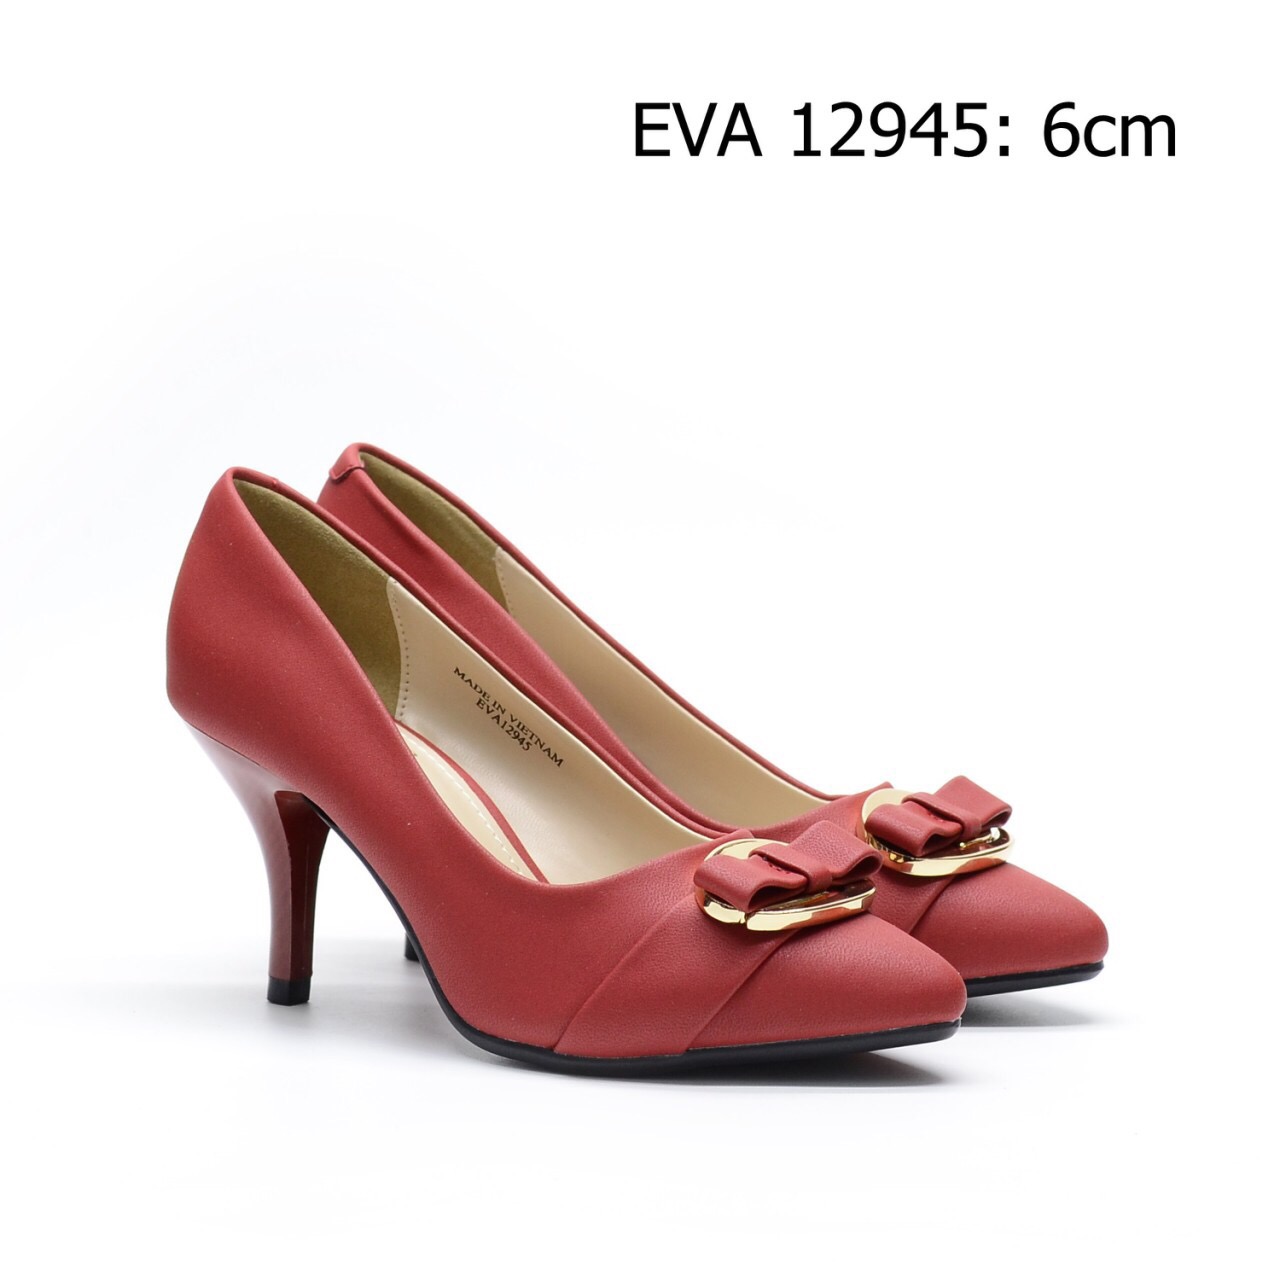 Giày công sở cao gót EVA12945 cao 6cm có nơ mới